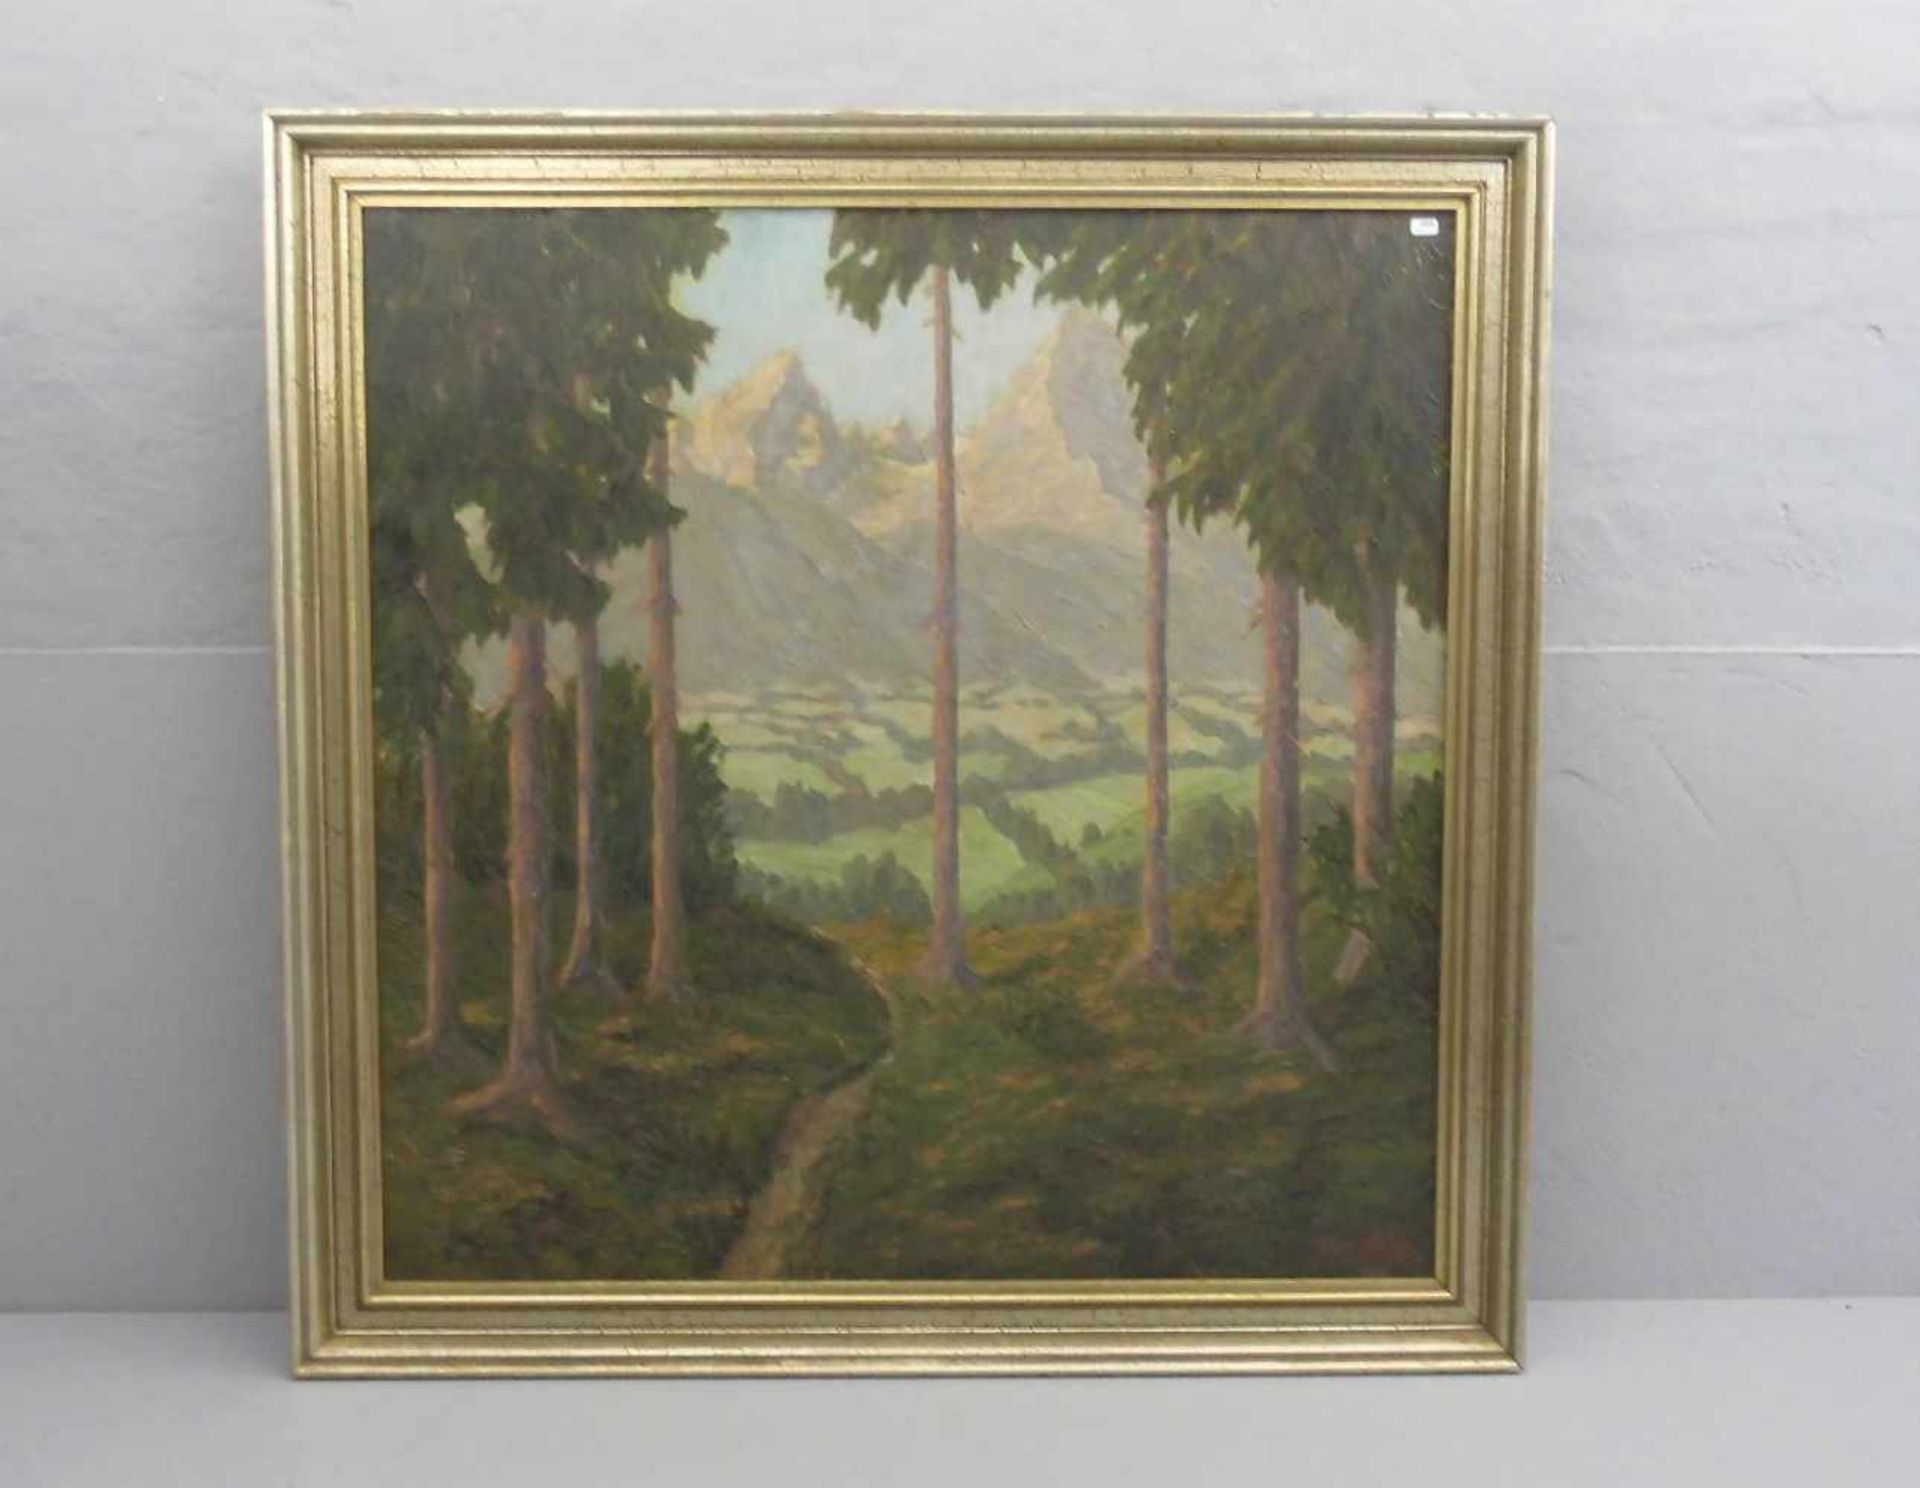 PRÖLS, HANS (München 1888-1969), Gemälde / painting: "Waldweg mit Blick auf den Watzmann", Öl auf